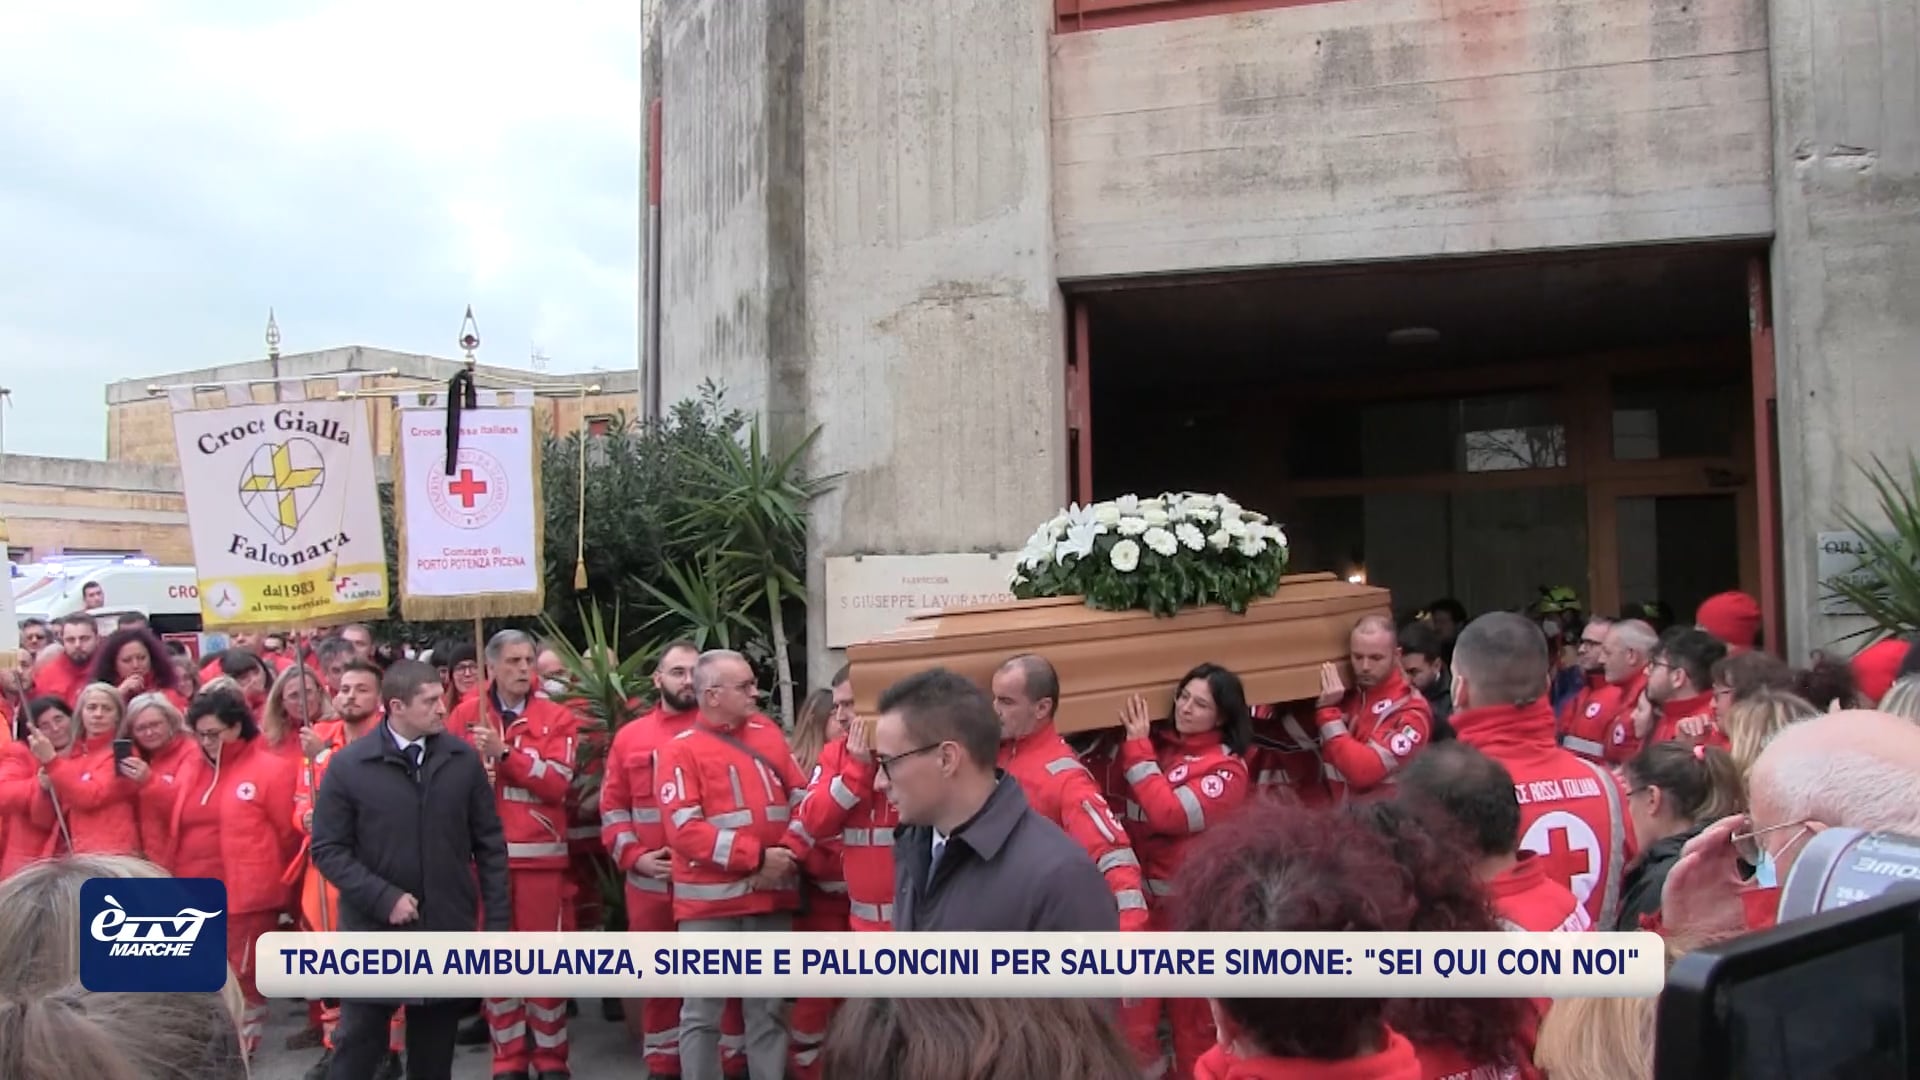 Tragedia dell'ambulanza, sirene e palloncini al funerale di Simone - VIDEO